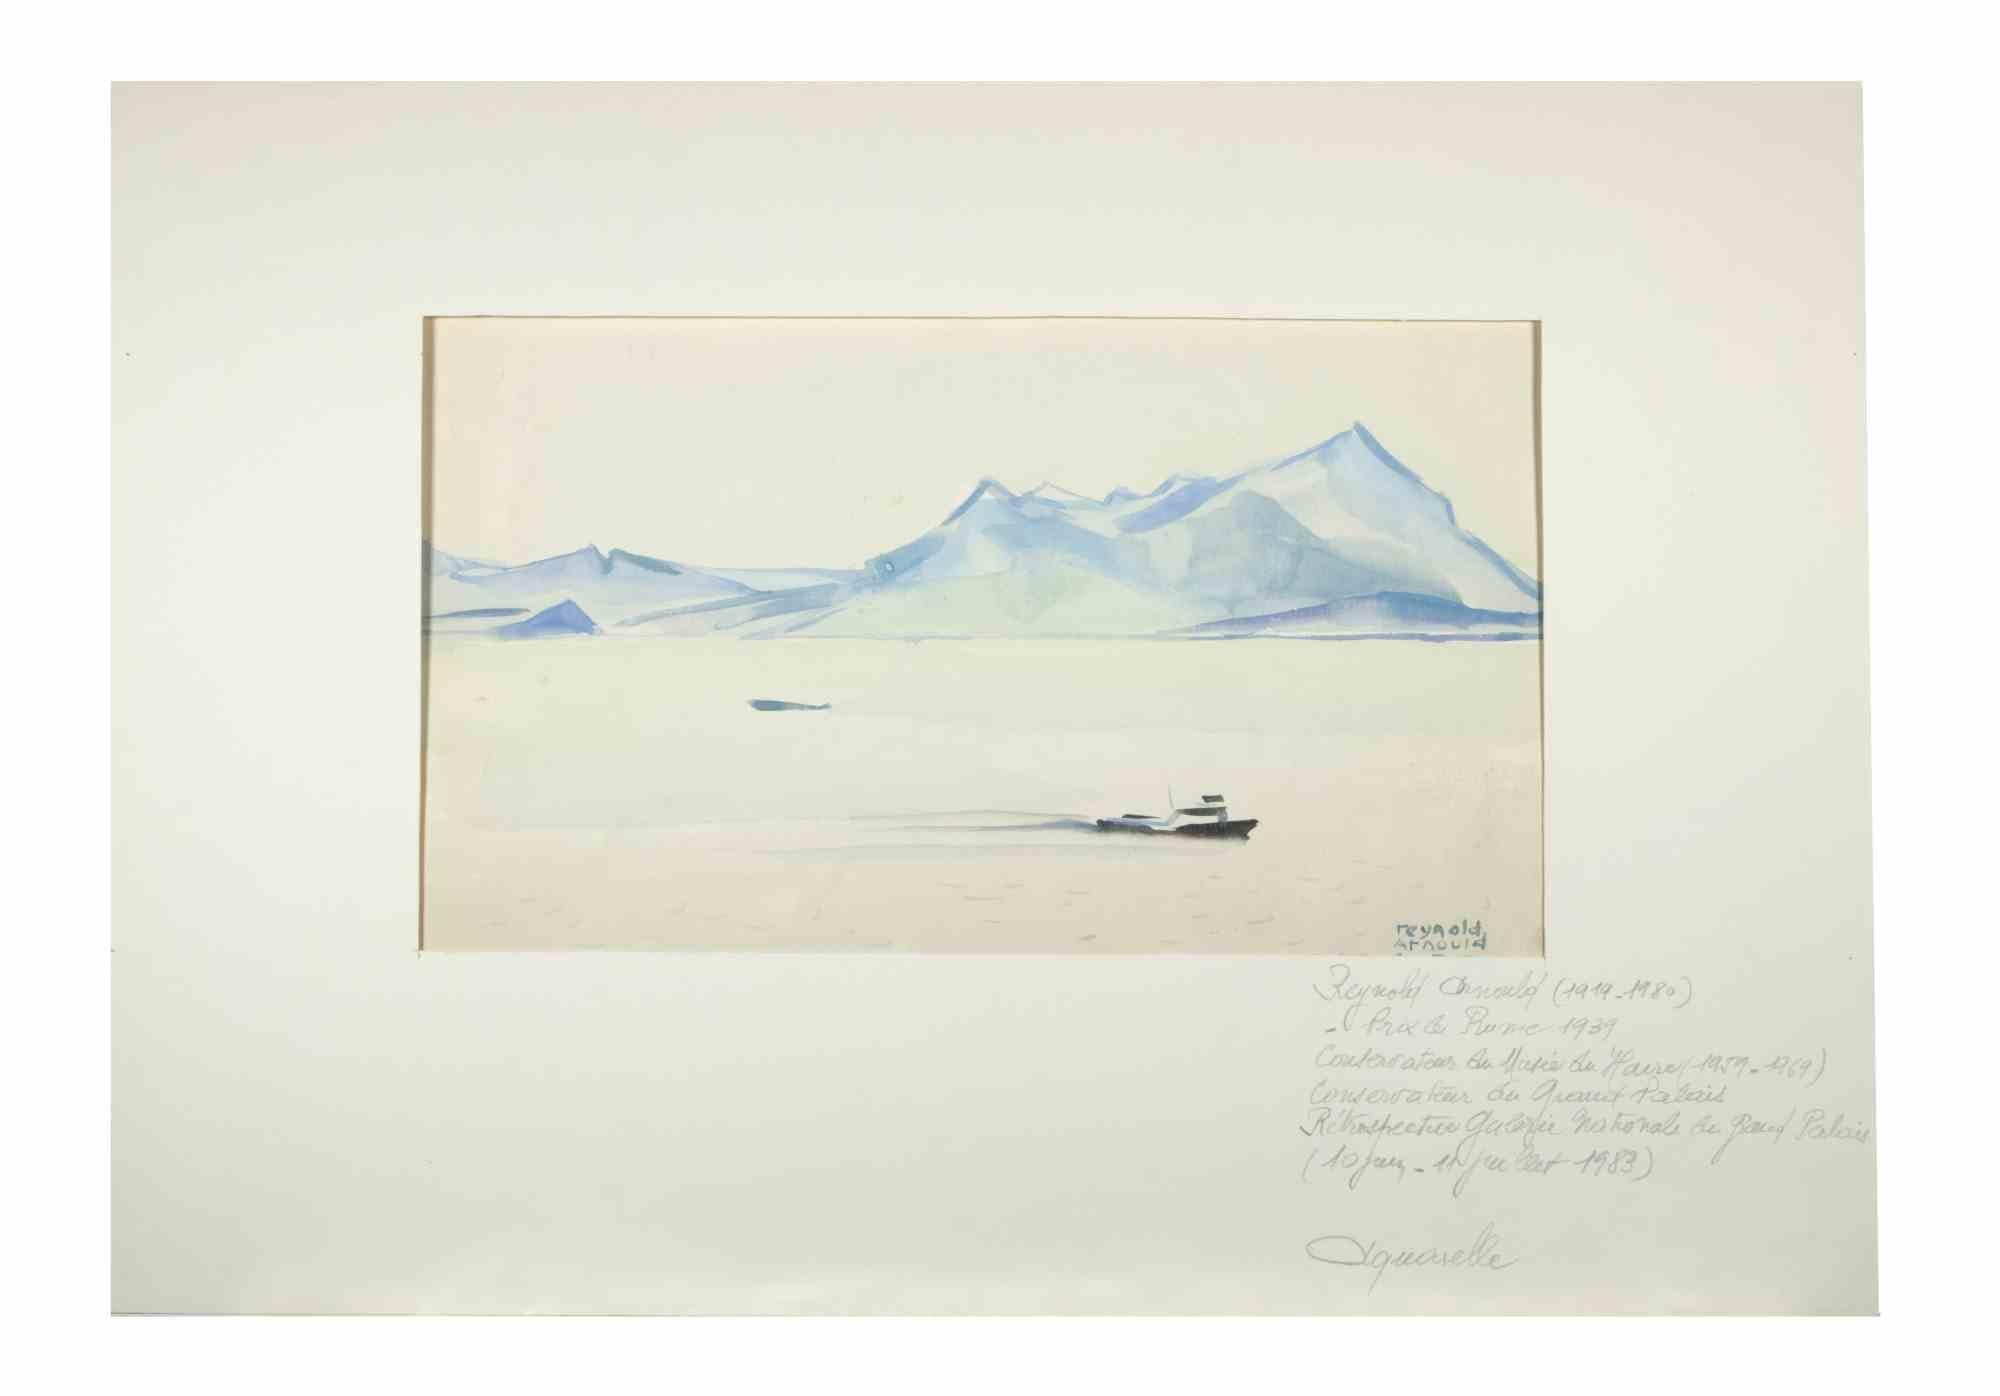 Stresa ist ein Aquarell des Künstlers Reynold Arnould  (Le Havre 1919 - Parigi 1980) im Jahr 1955.

Guter Zustand, einschließlich eines cremefarbenen Passepartouts aus Karton (35x50 cm).

Handsigniert und datiert vom Künstler in der rechten unteren